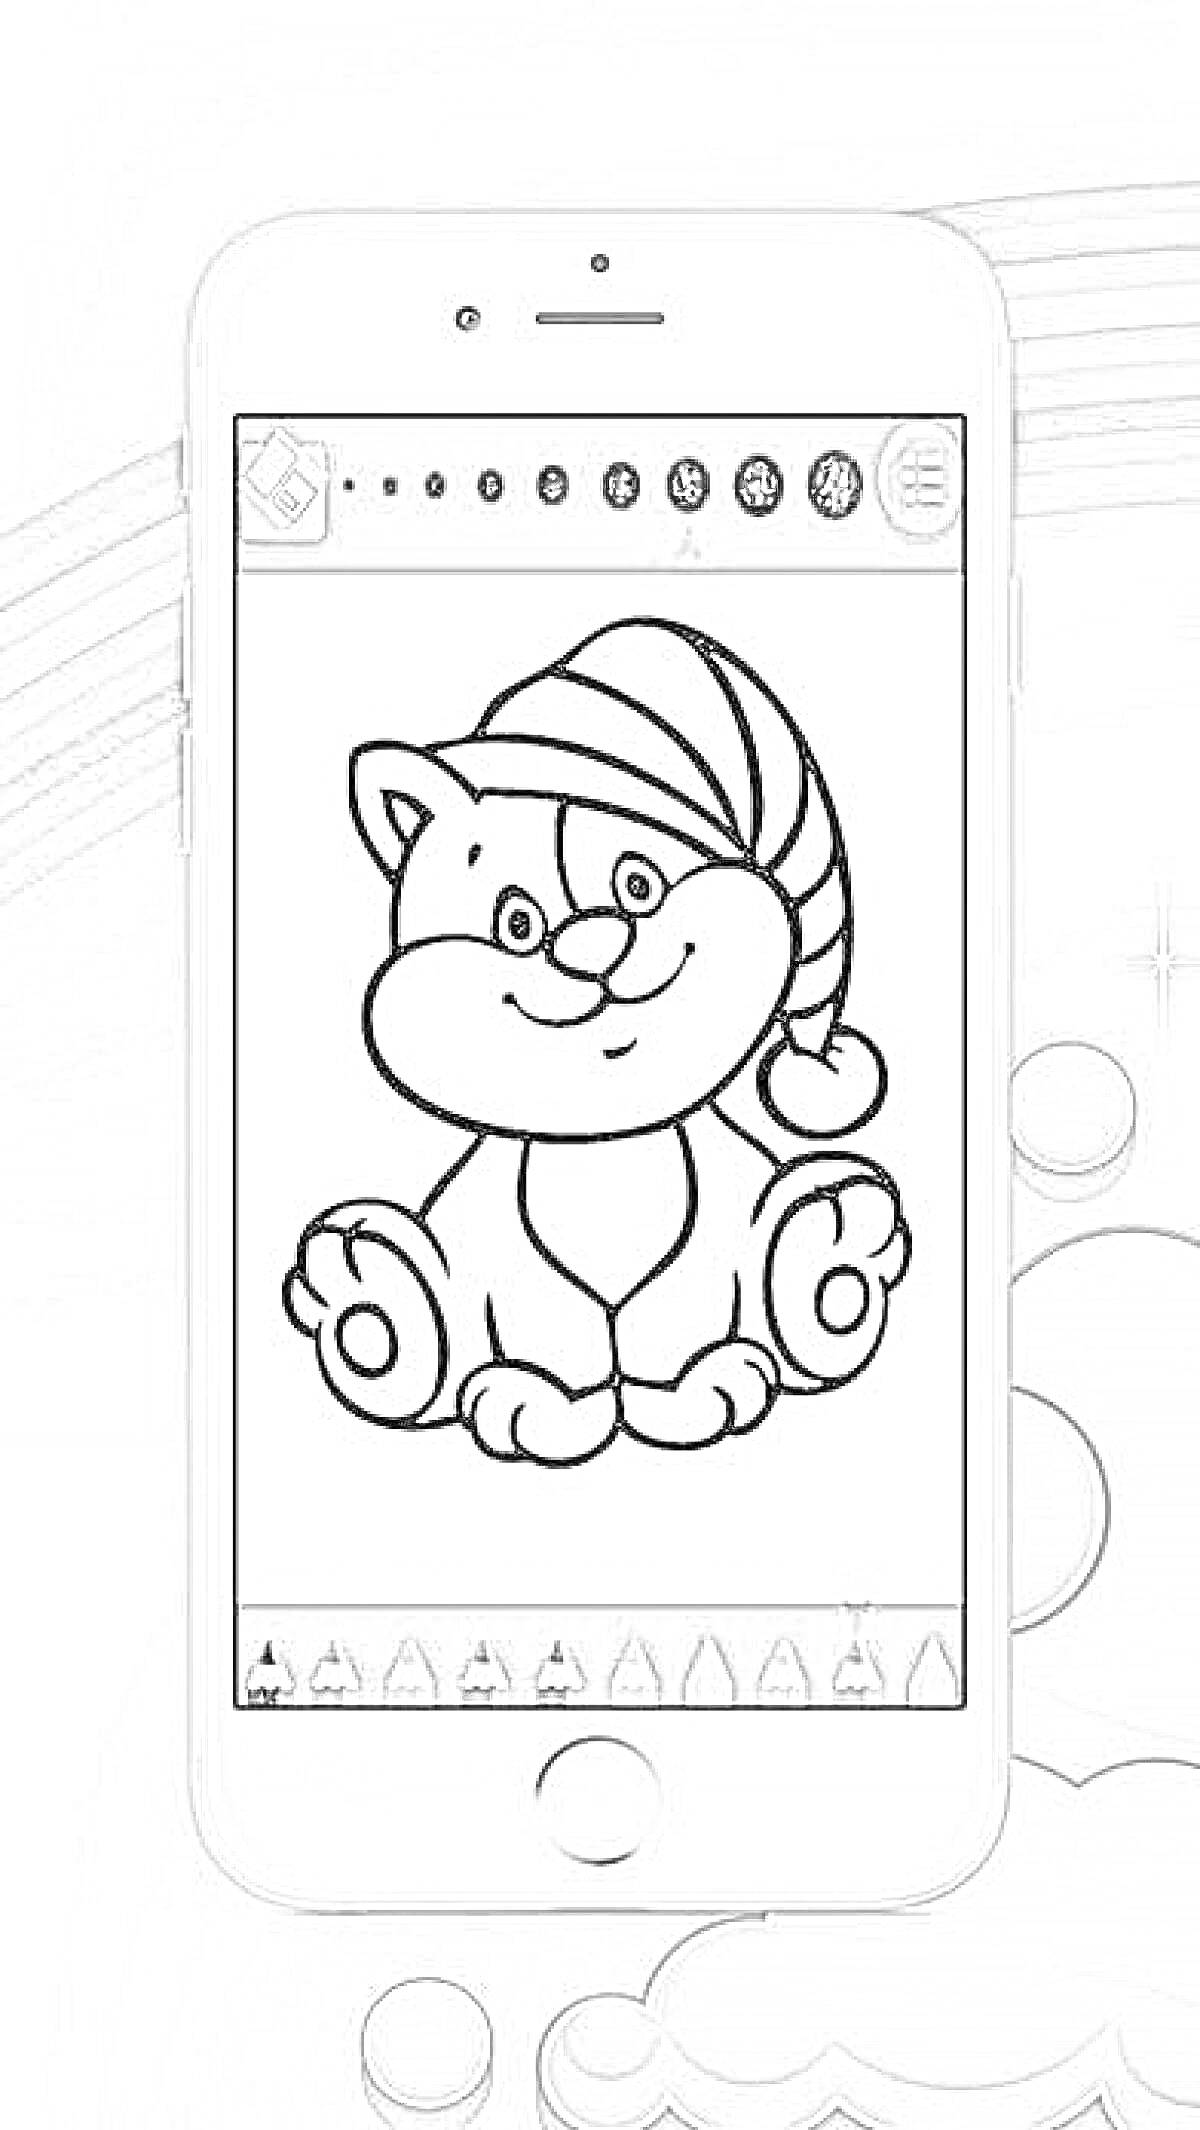 Раскраска Приложение для раскрашивания с изображением котёнка в колпаке на экране смартфона на фоне радуги и облаков